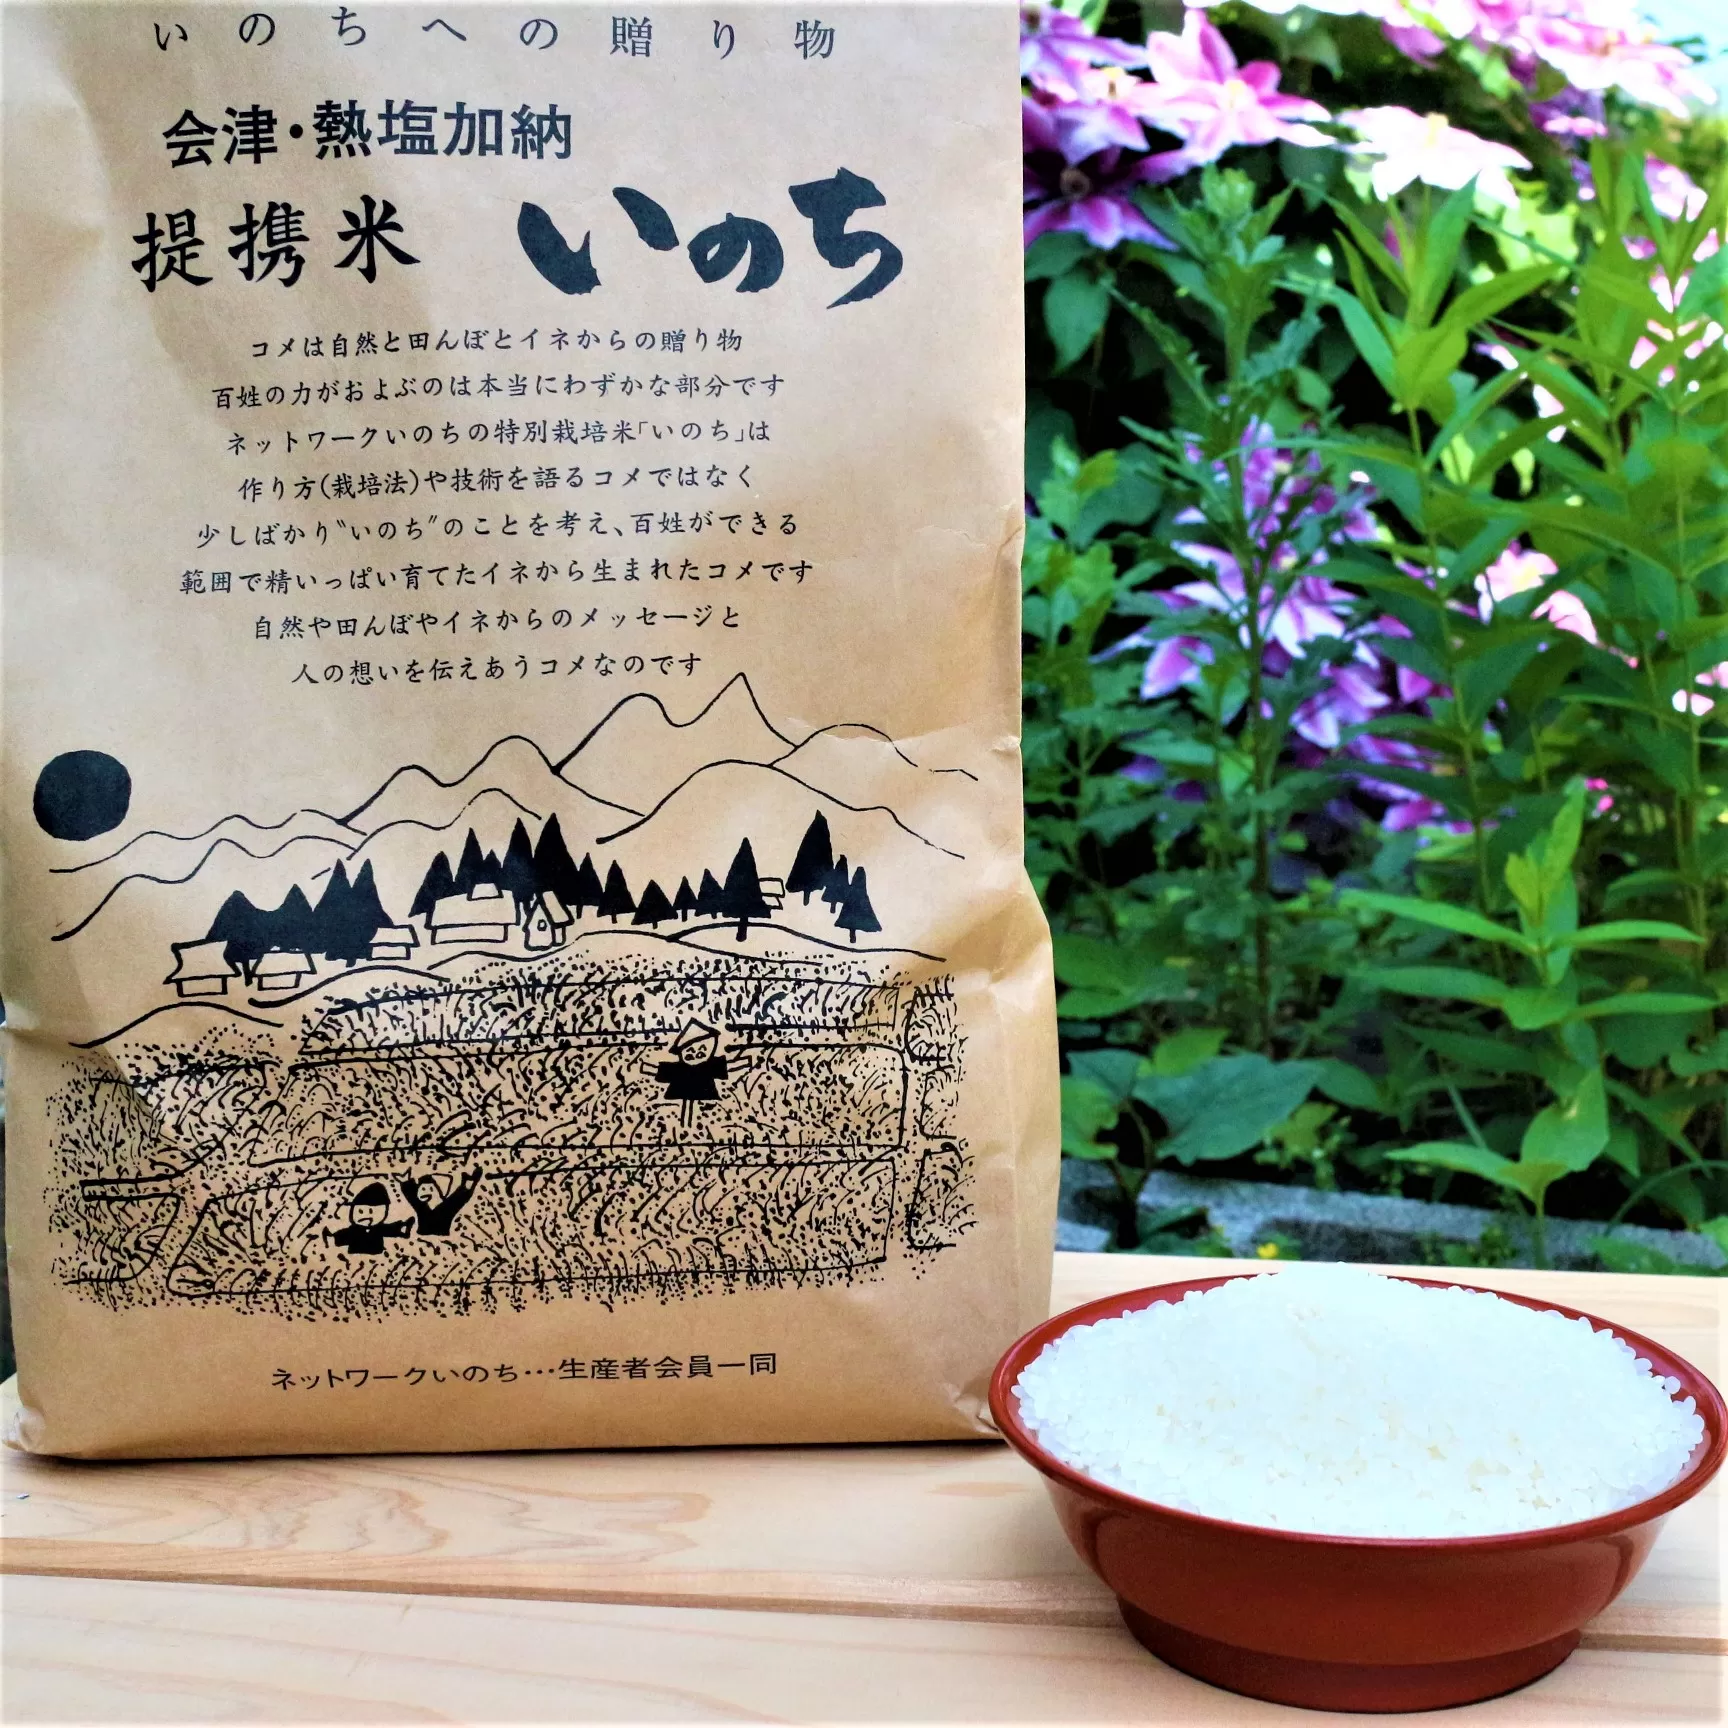 有機無農薬ＪＡＳ認証米コシヒカリ白米5kg